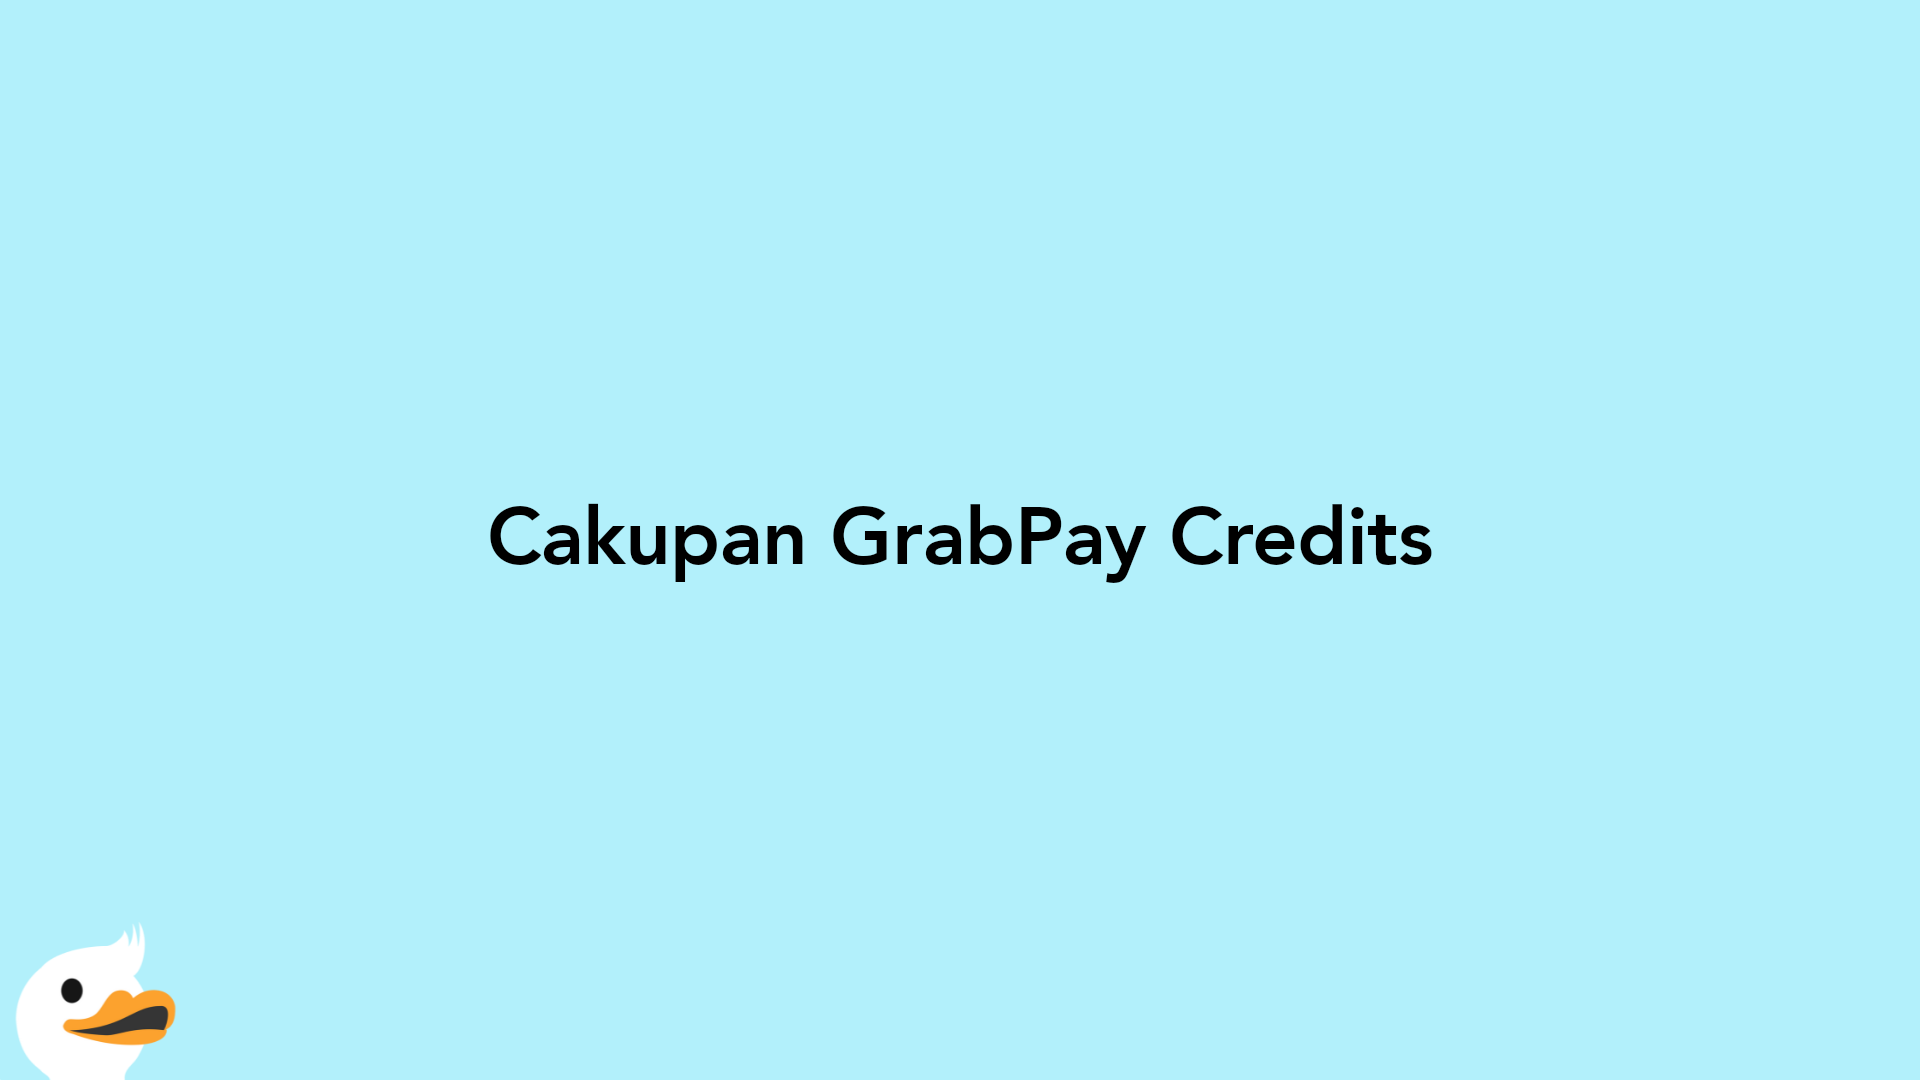 Cakupan GrabPay Credits